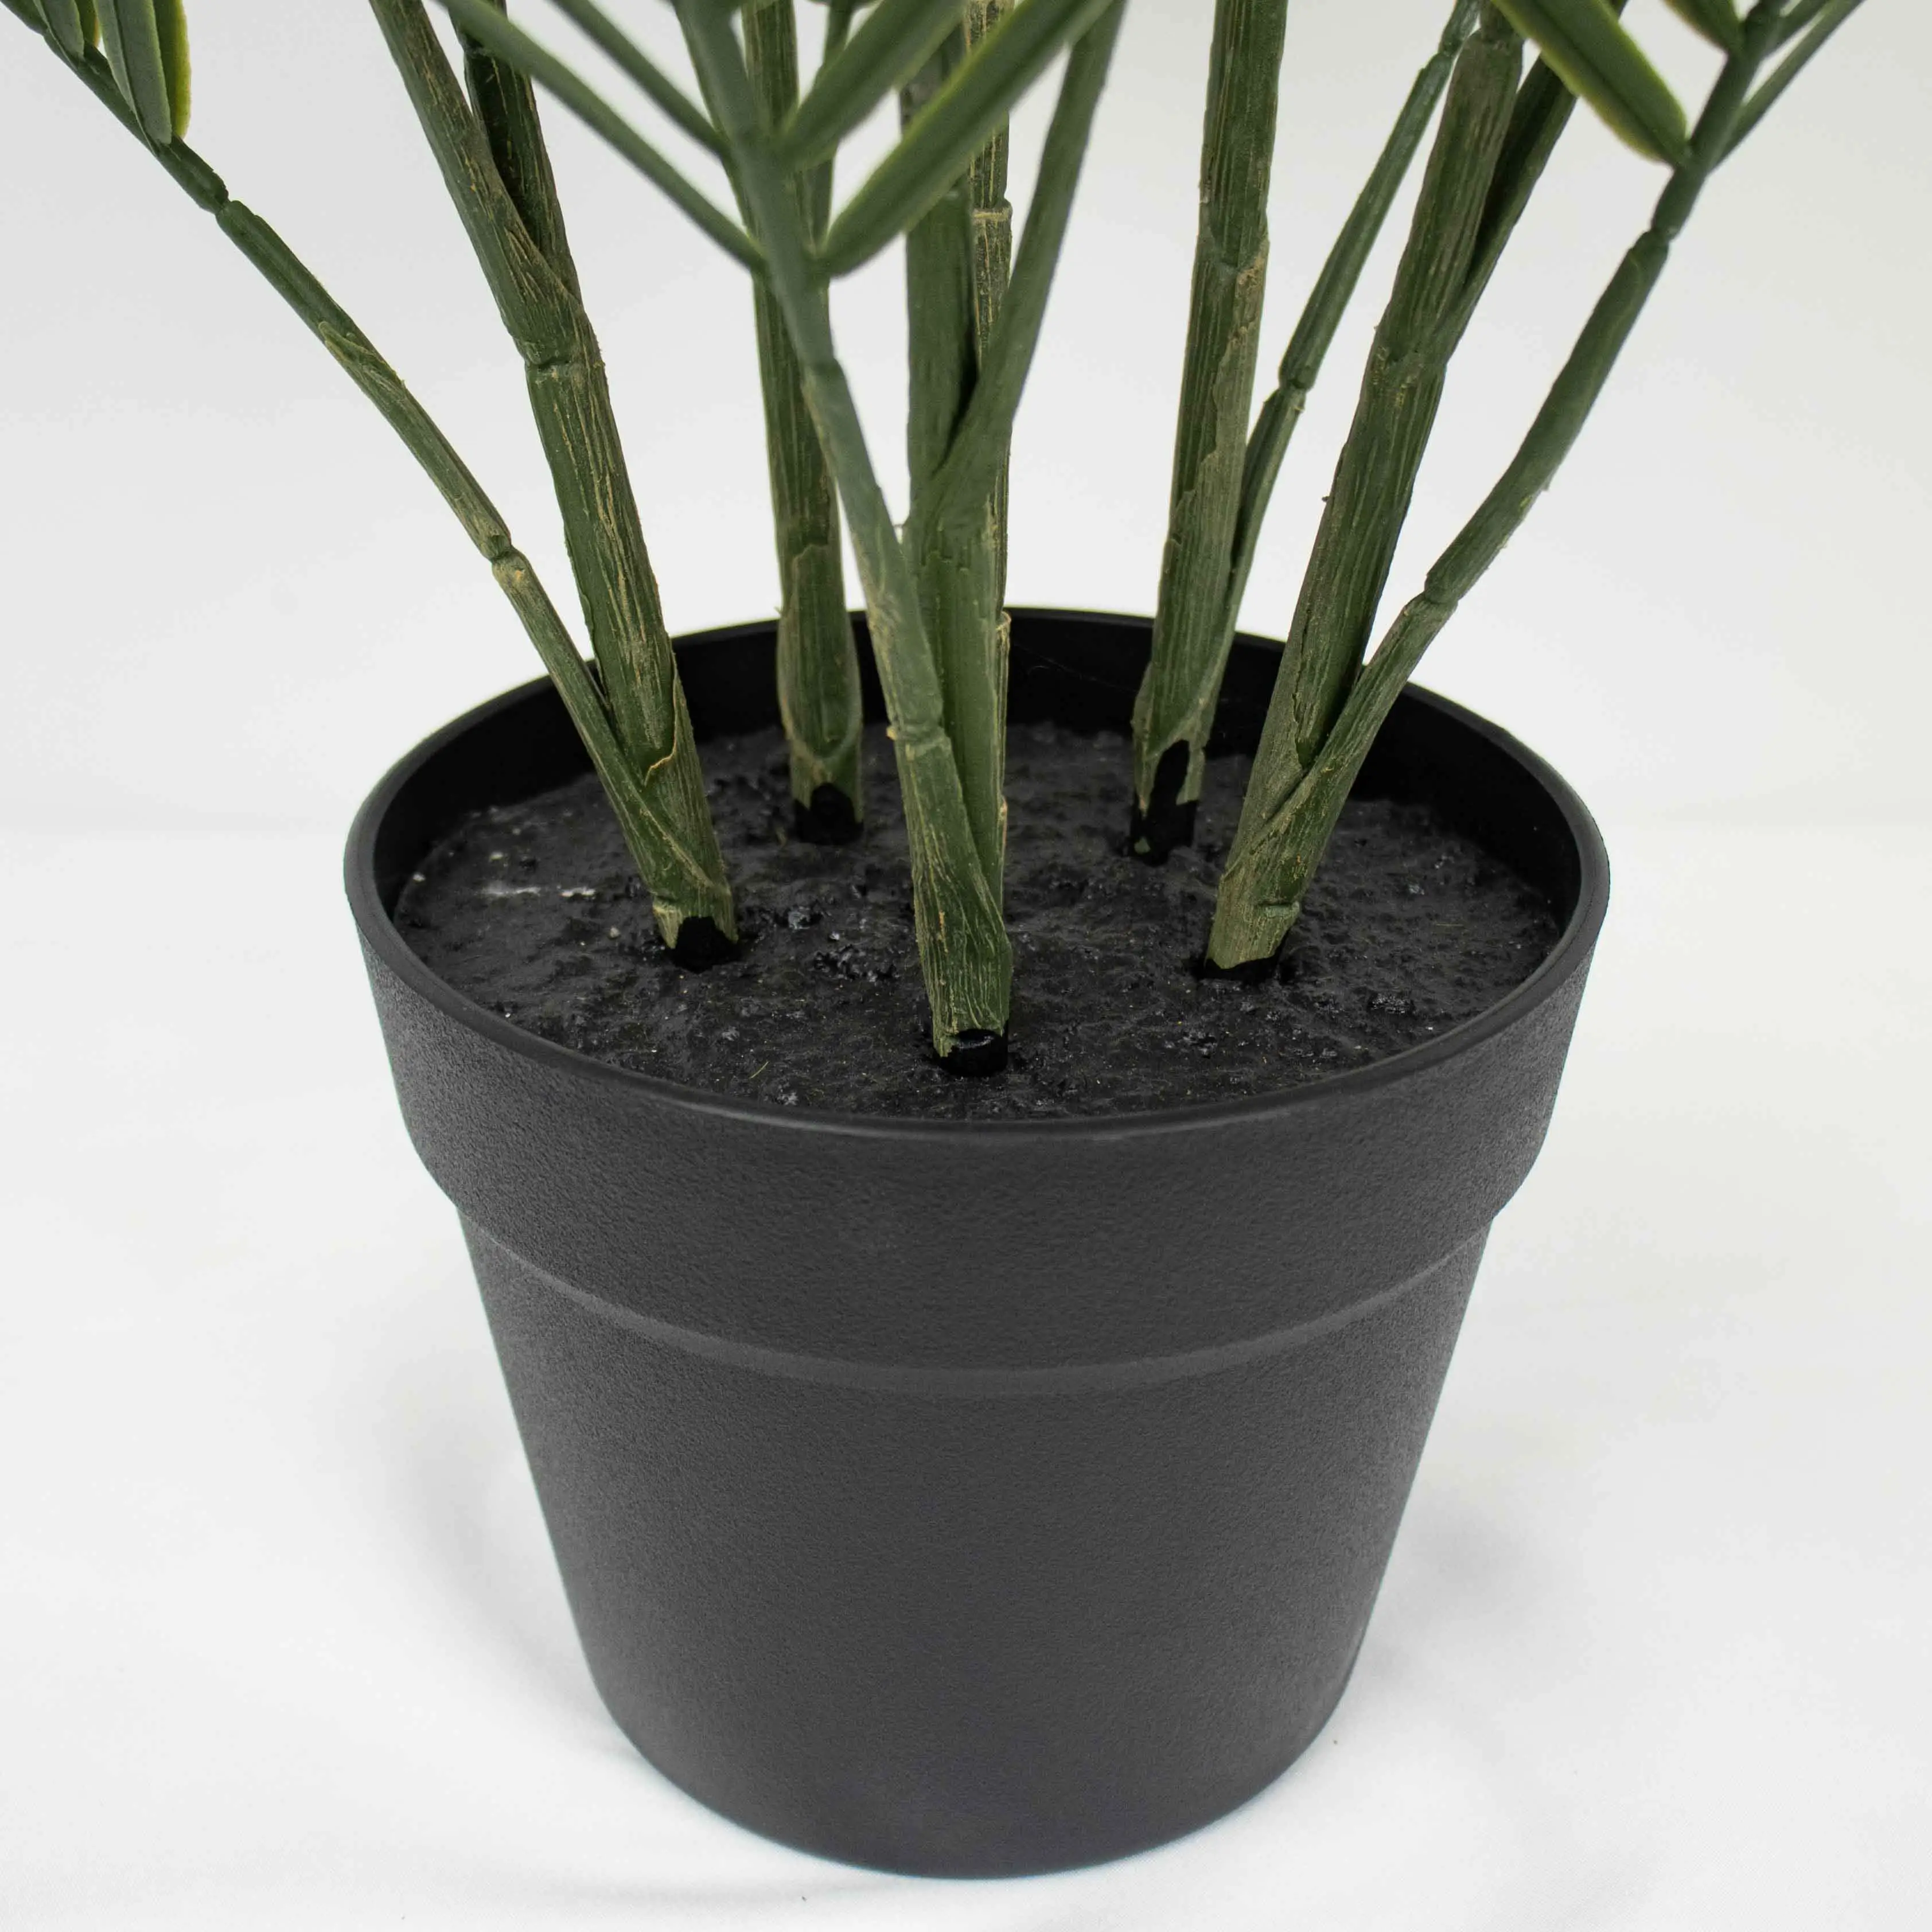 Vaso de cerâmica artificial simulado realista para decoração de jardim, com plantas de plástico com toque real 93 cm, palmeira da sorte Trachycarpus